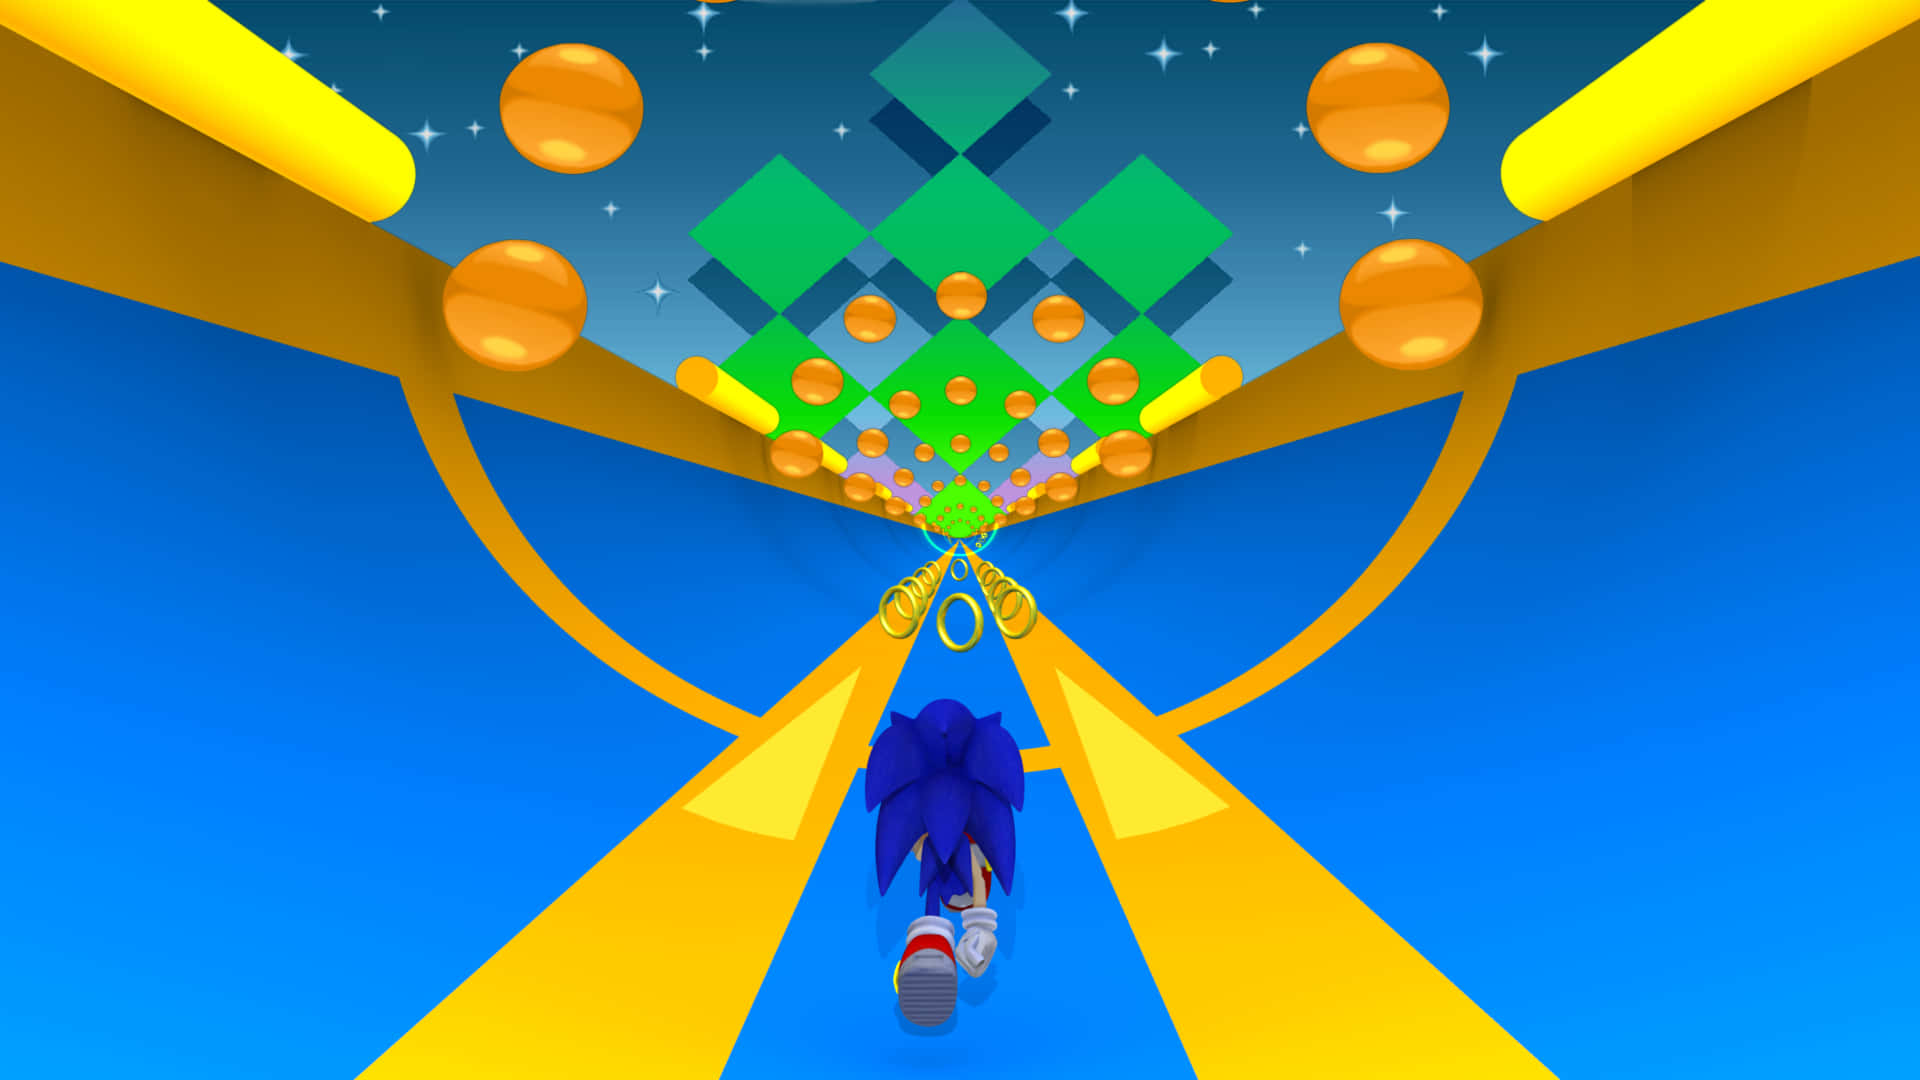 Sonicthe Hedgehog - Skärmdump Av Sonic Run. Wallpaper